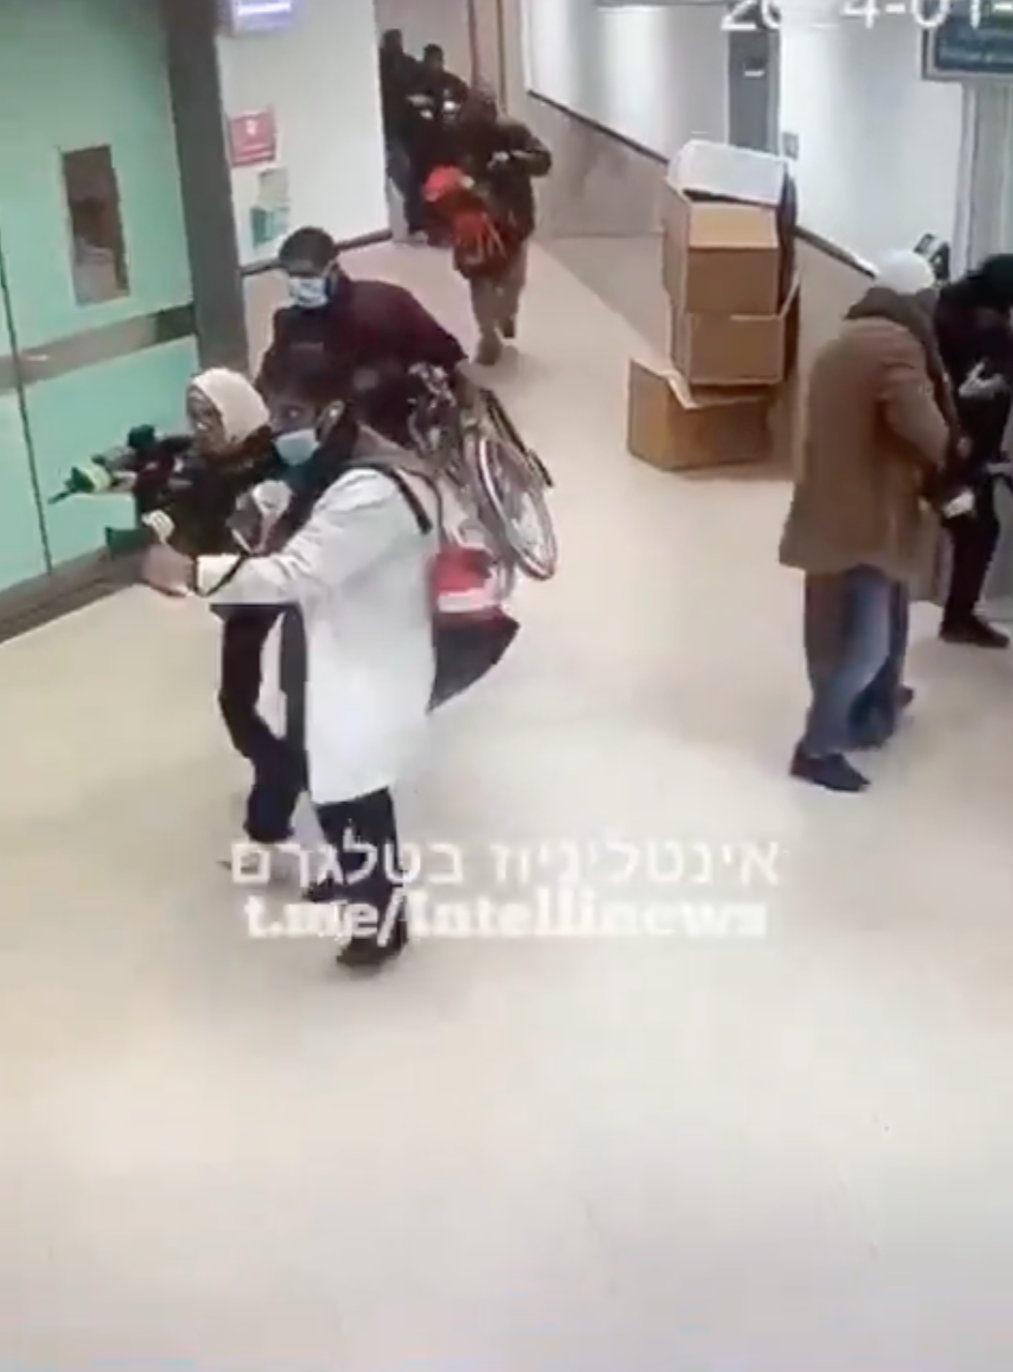 Спецоперация ЦАХАЛ в больнице Ибн-Сина на Западном берегу Иордана, скриншот из видео из соцсетей